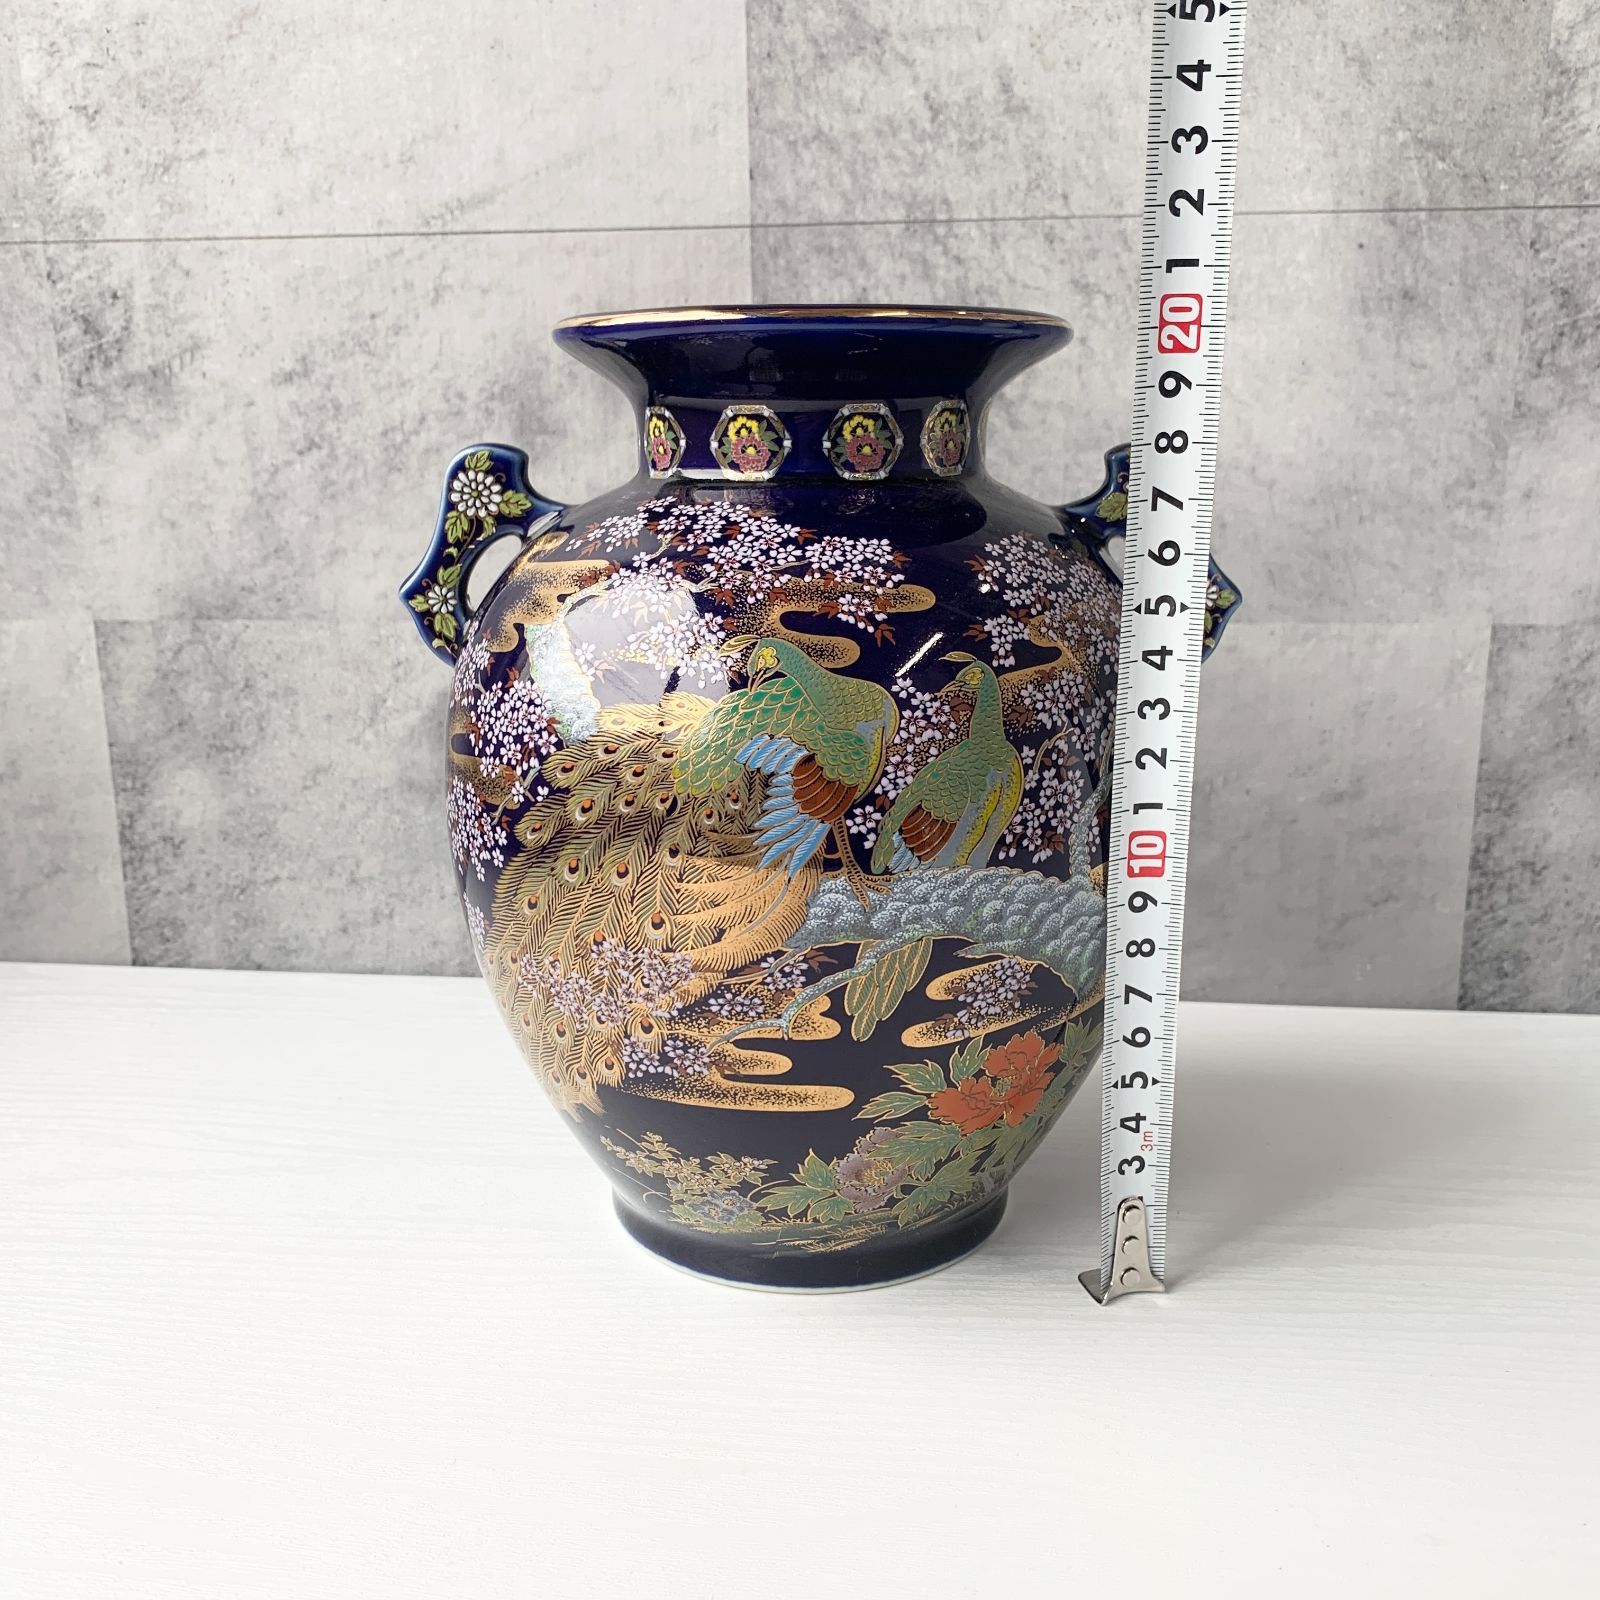 明陶 壺 花瓶 孔雀 クジャク 桜 絵柄 紺色 瑠璃色 和風 豪華 置き物 アンティーク 美術品